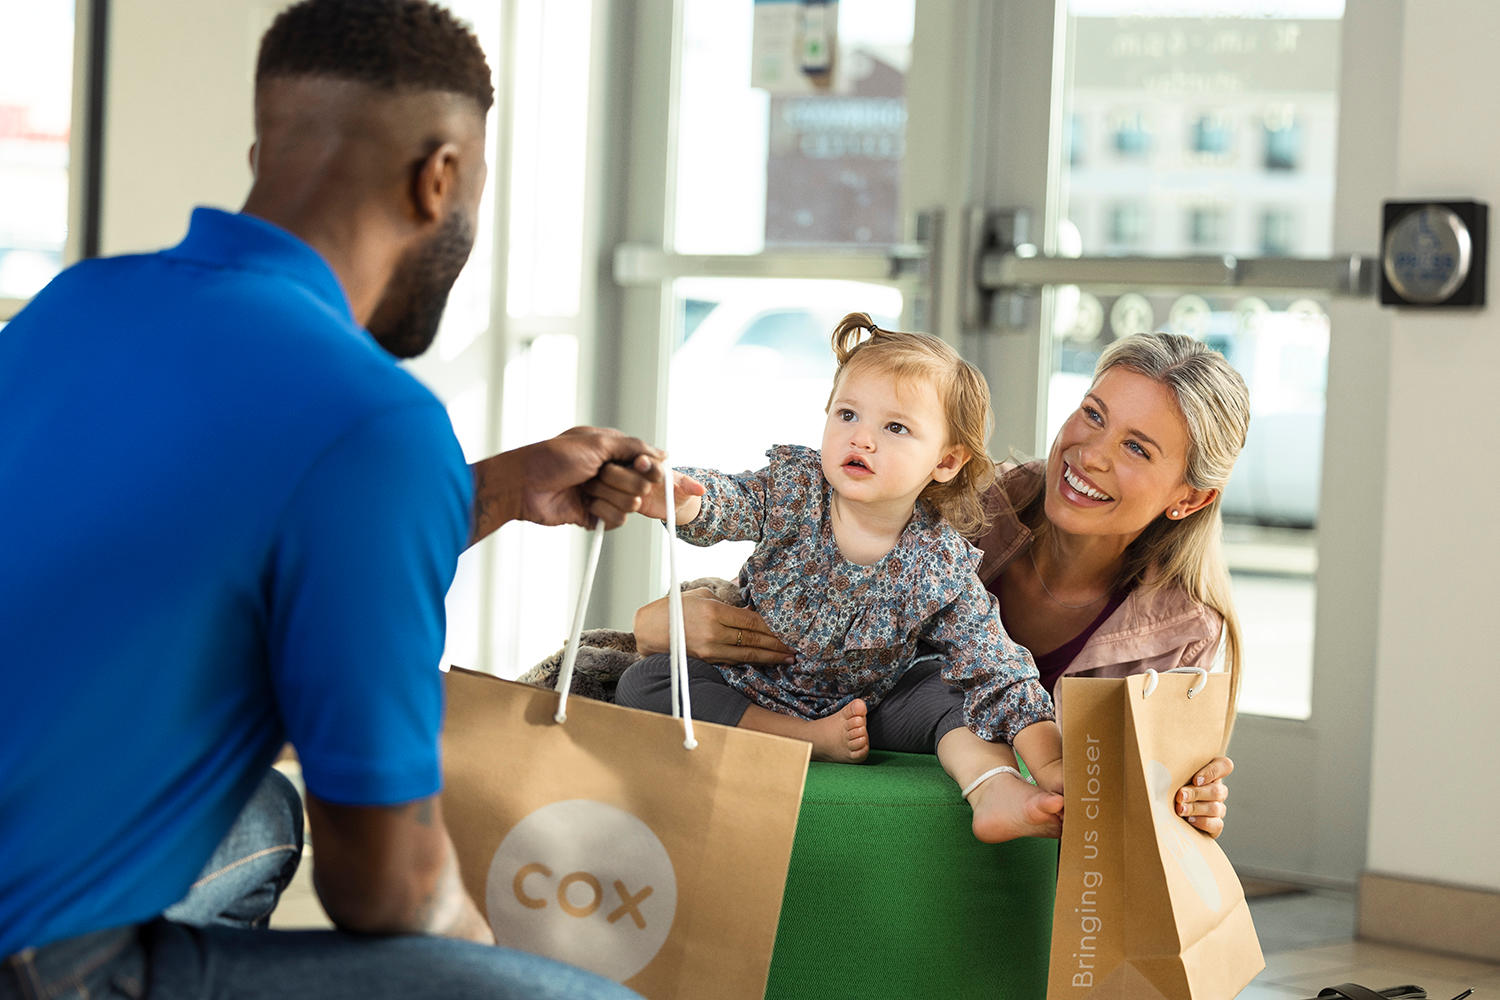 Image 4 | Cox Authorized Retailer